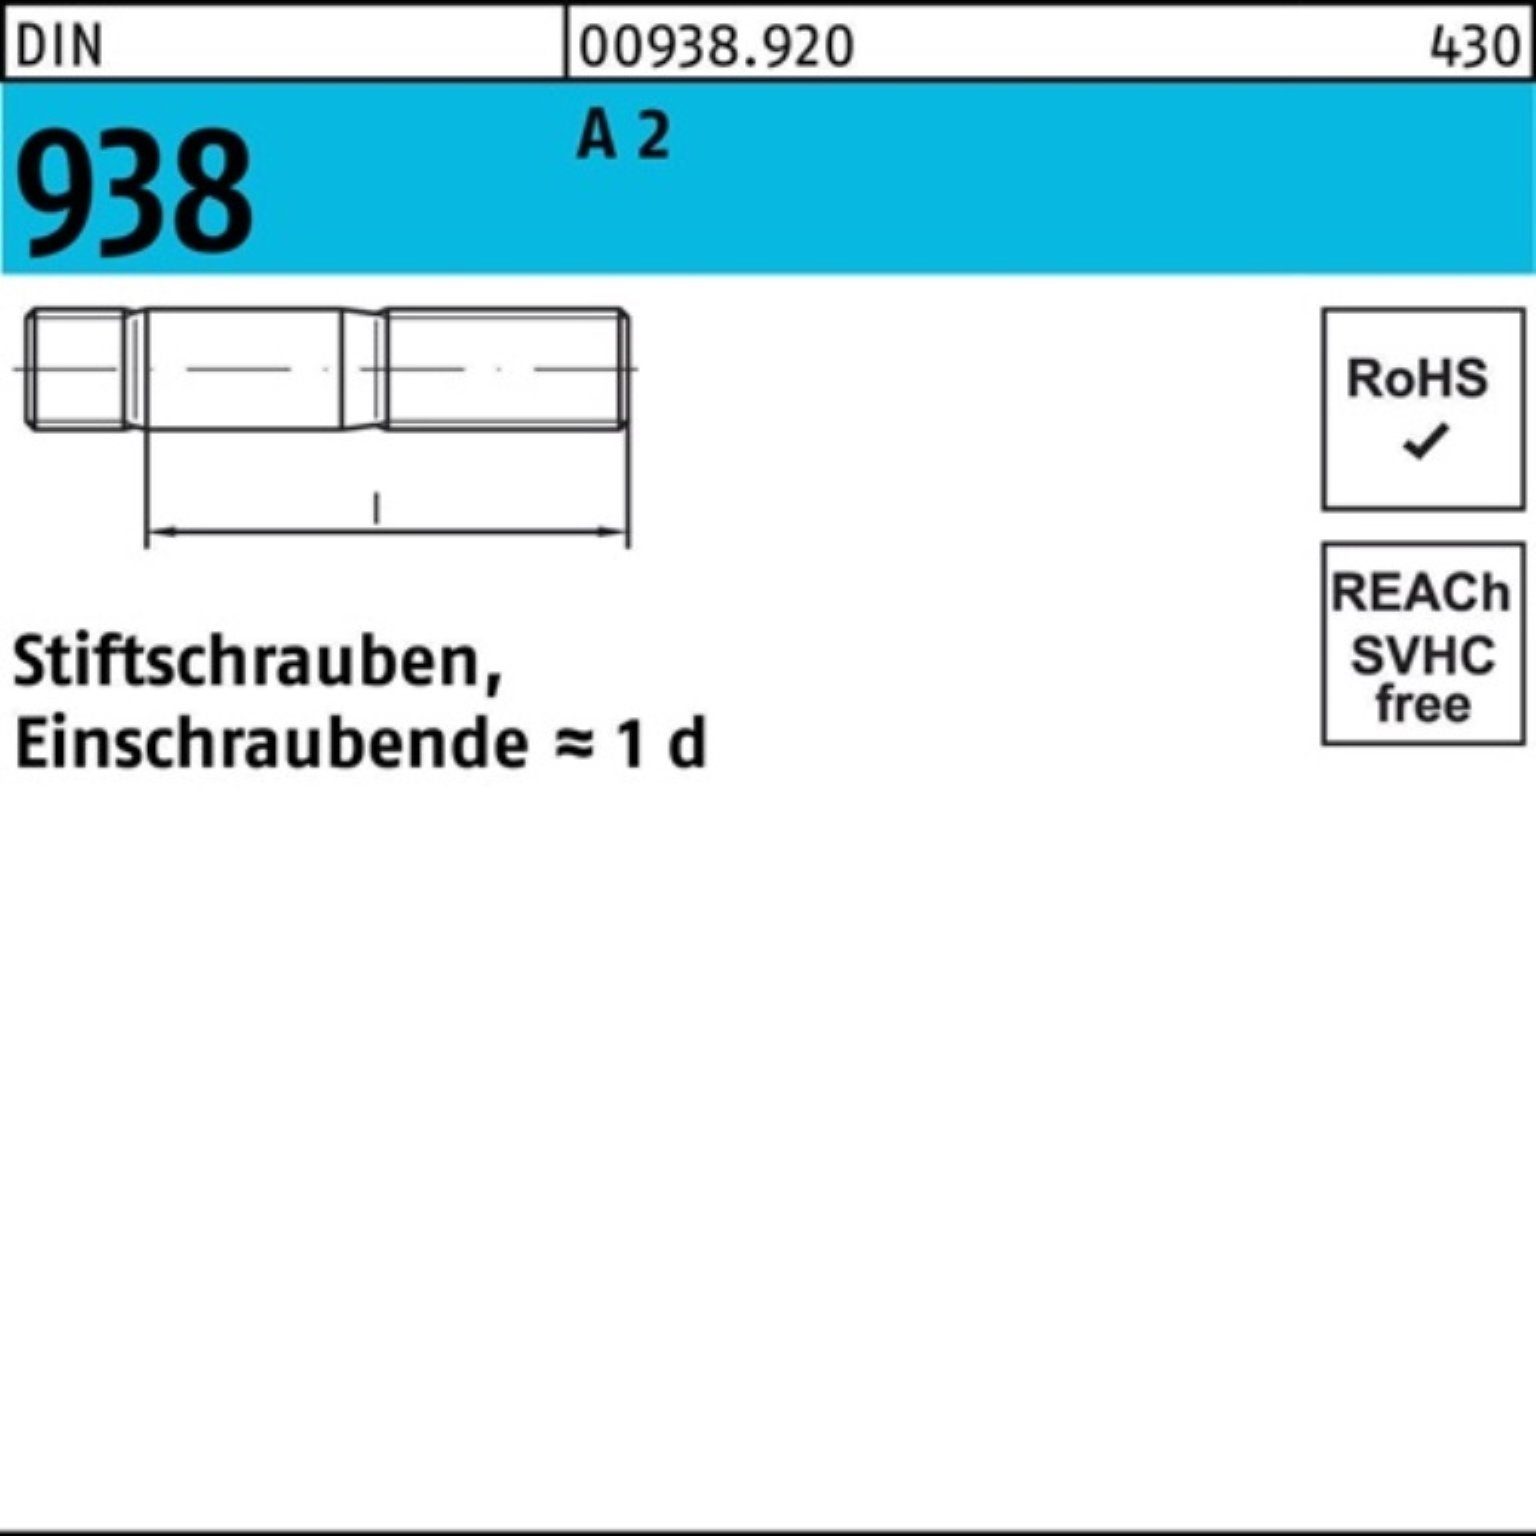 Reyher Stiftschraube 100er Pack 25 20 Stiftschraube 938 DIN M6x 938 2 DIN A A Stif 2 Stück